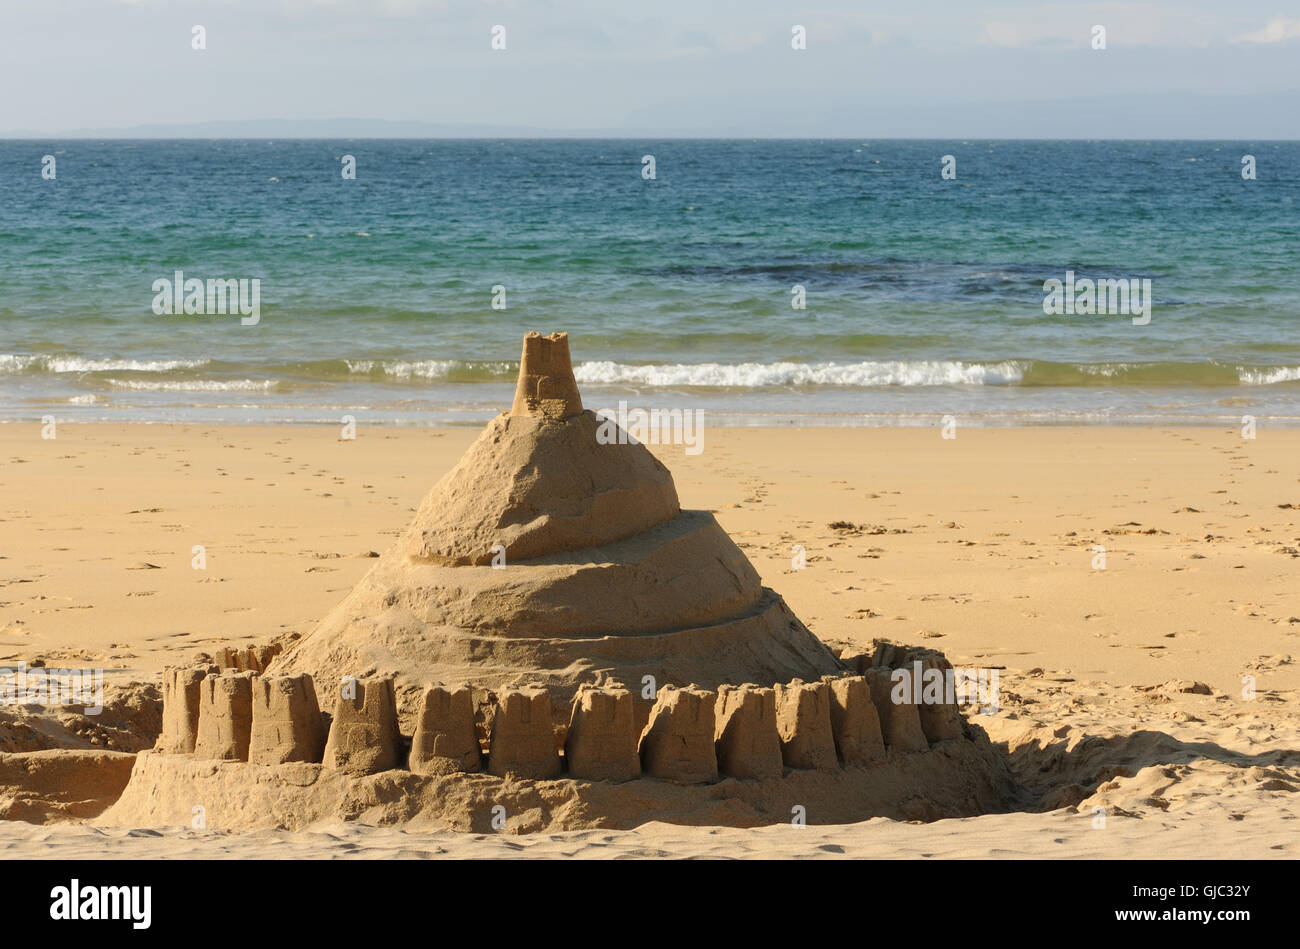 Un immense château de sable sur la plage de Kiloran Bay. La baie de Kiloran, Colonsay, Hébrides intérieures, Argyll, Scotland, UK. 25juin16 Banque D'Images